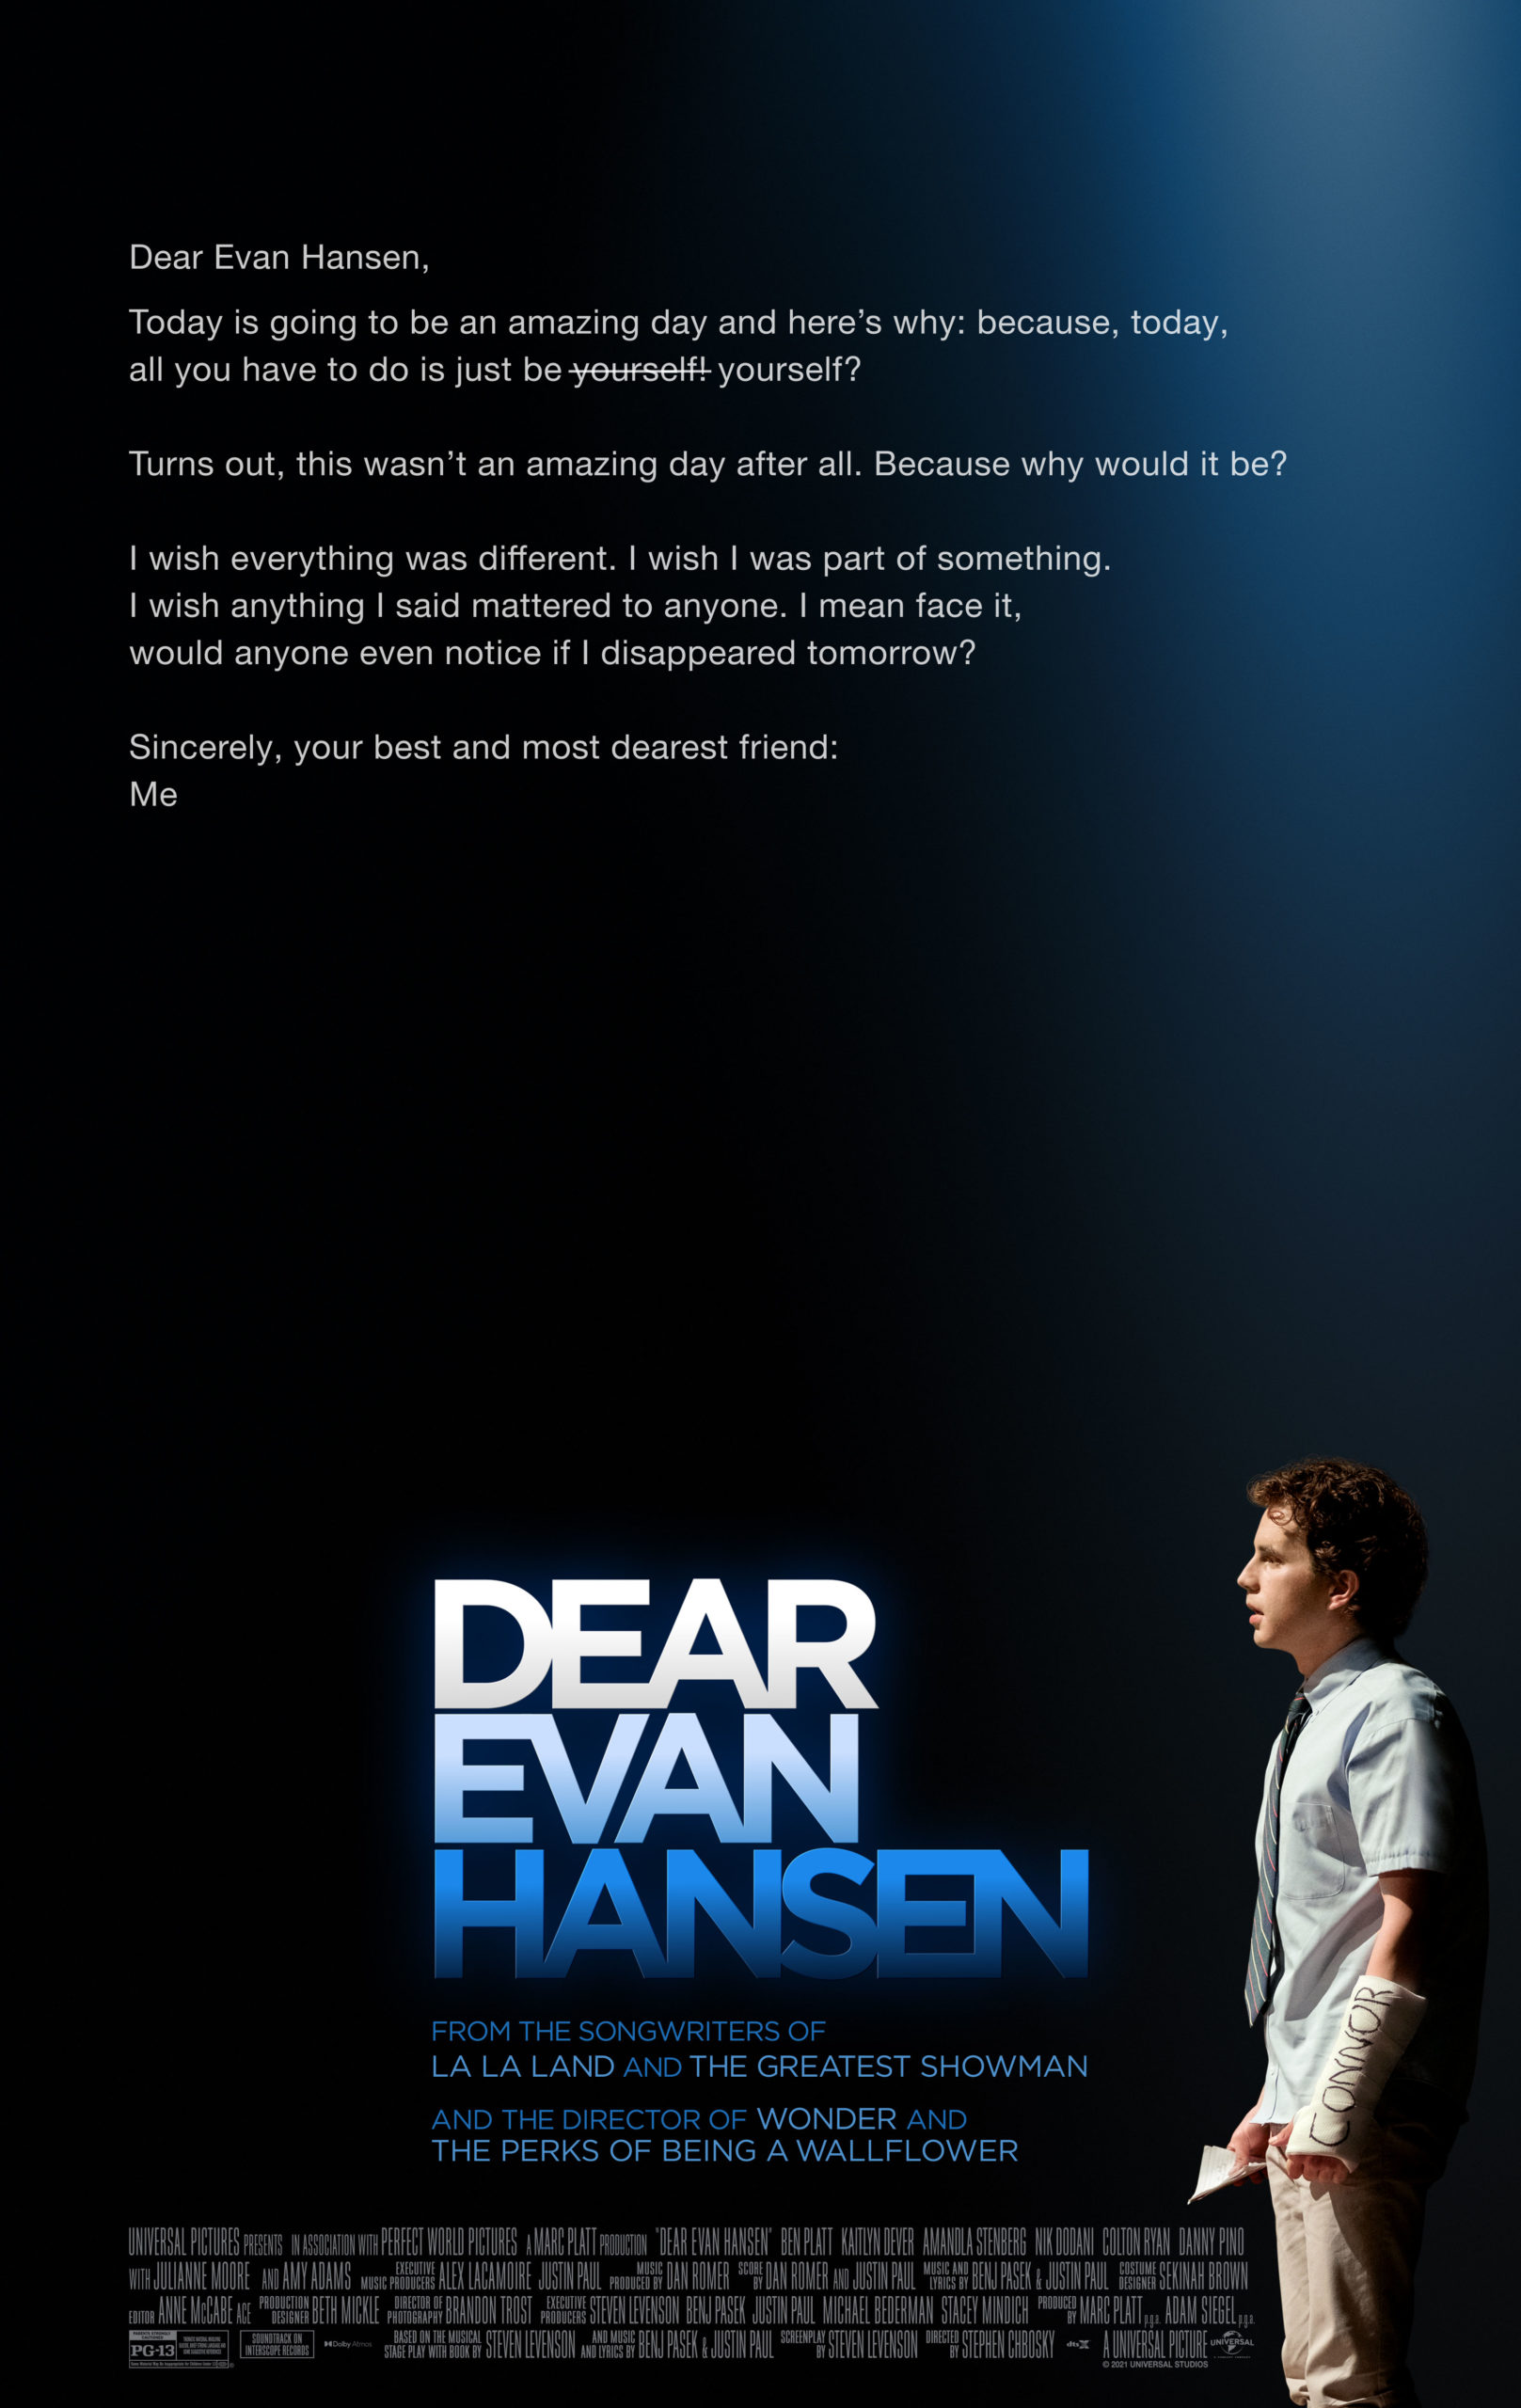 Dear Evan Hansen – Movie Review